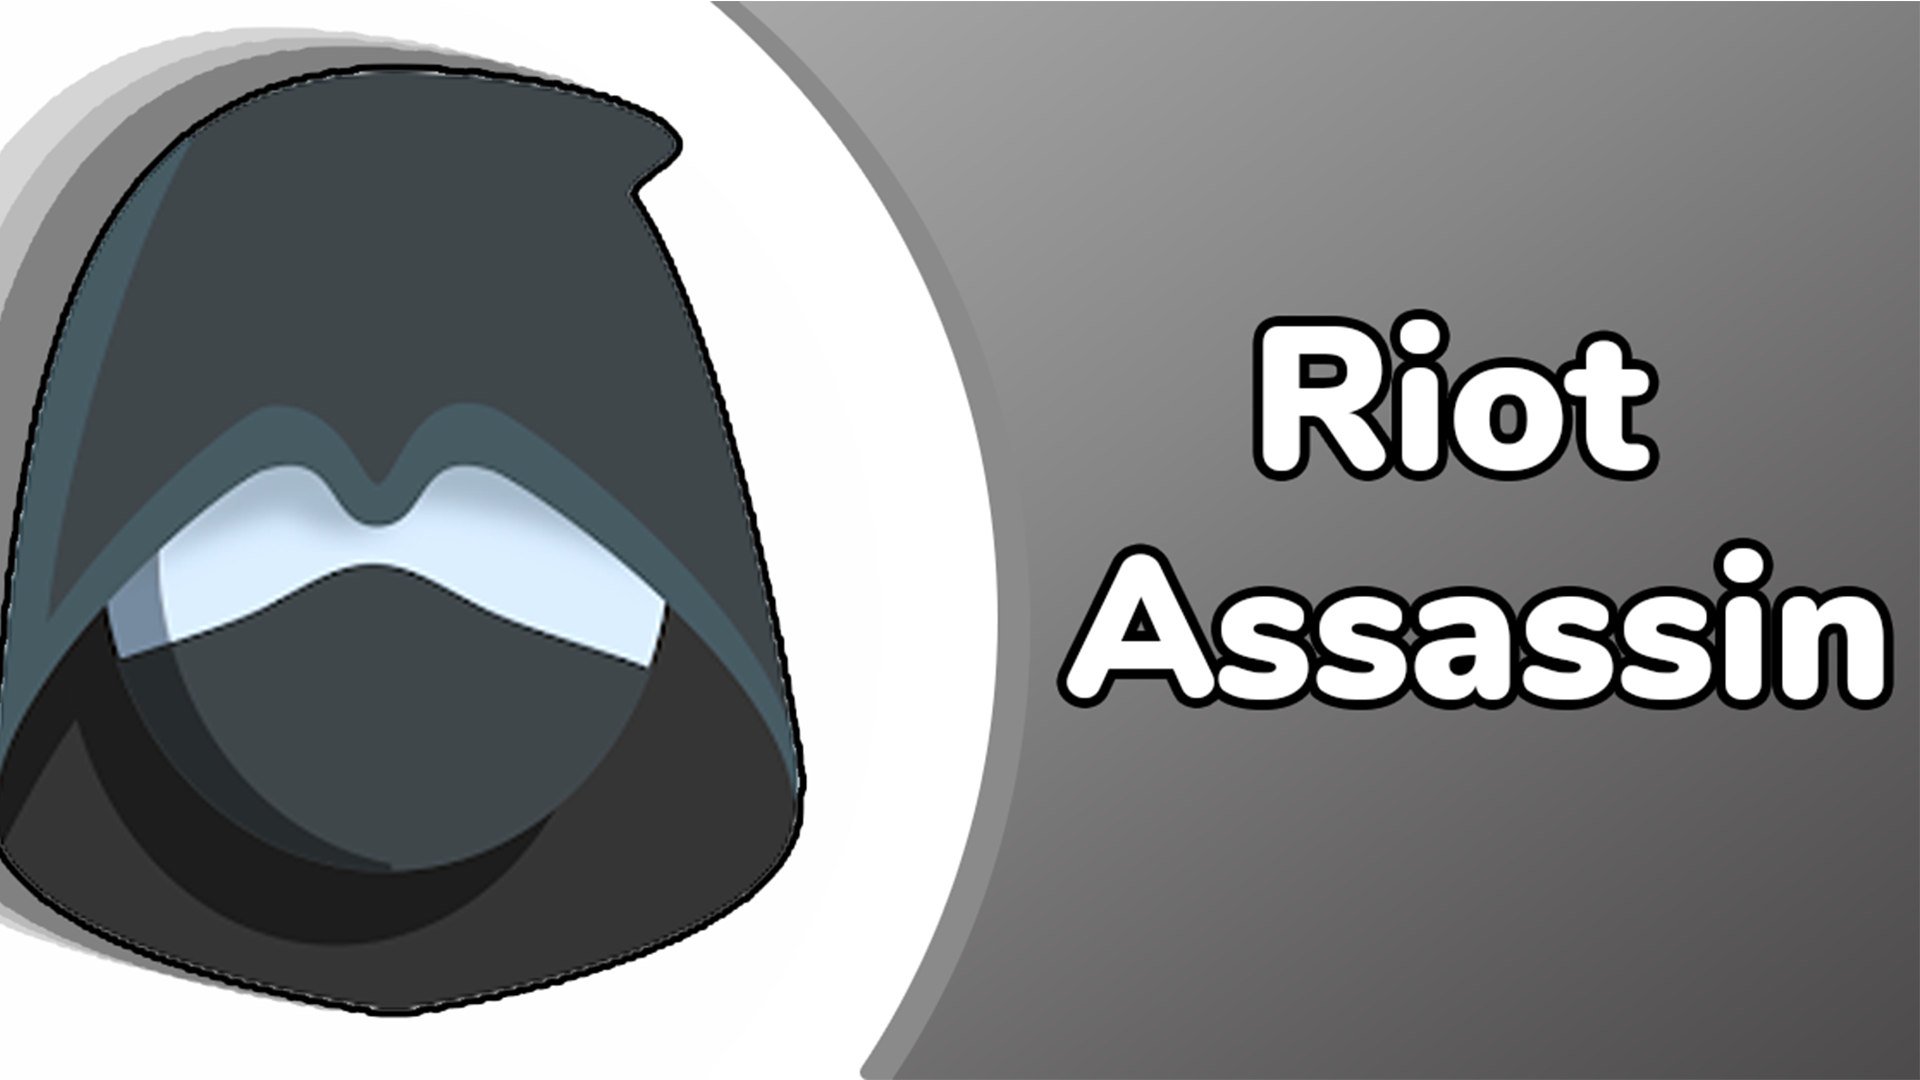 Riot Assassin